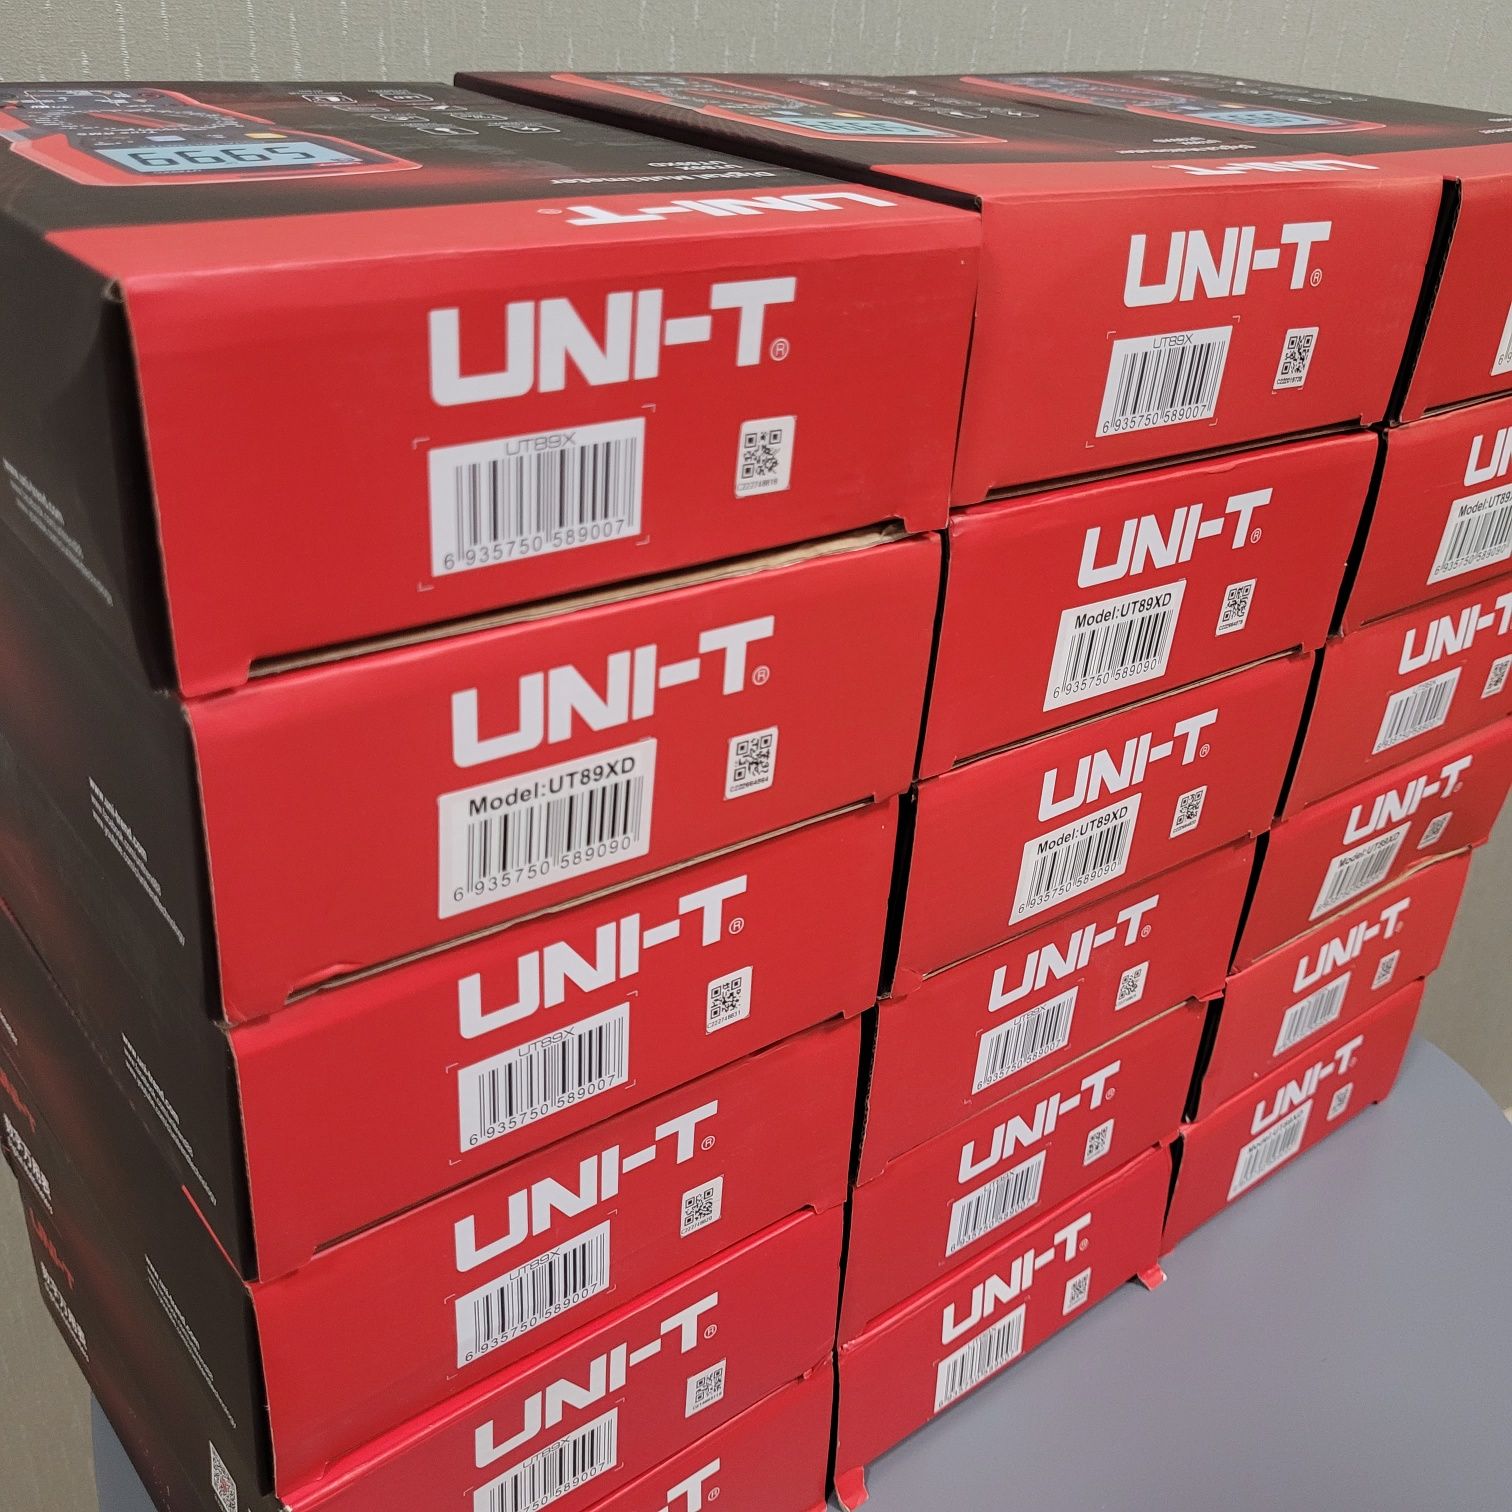 Мультиметр UNI-T UT-89XD/UT-89X в подарок чехол и дополнительные щупы